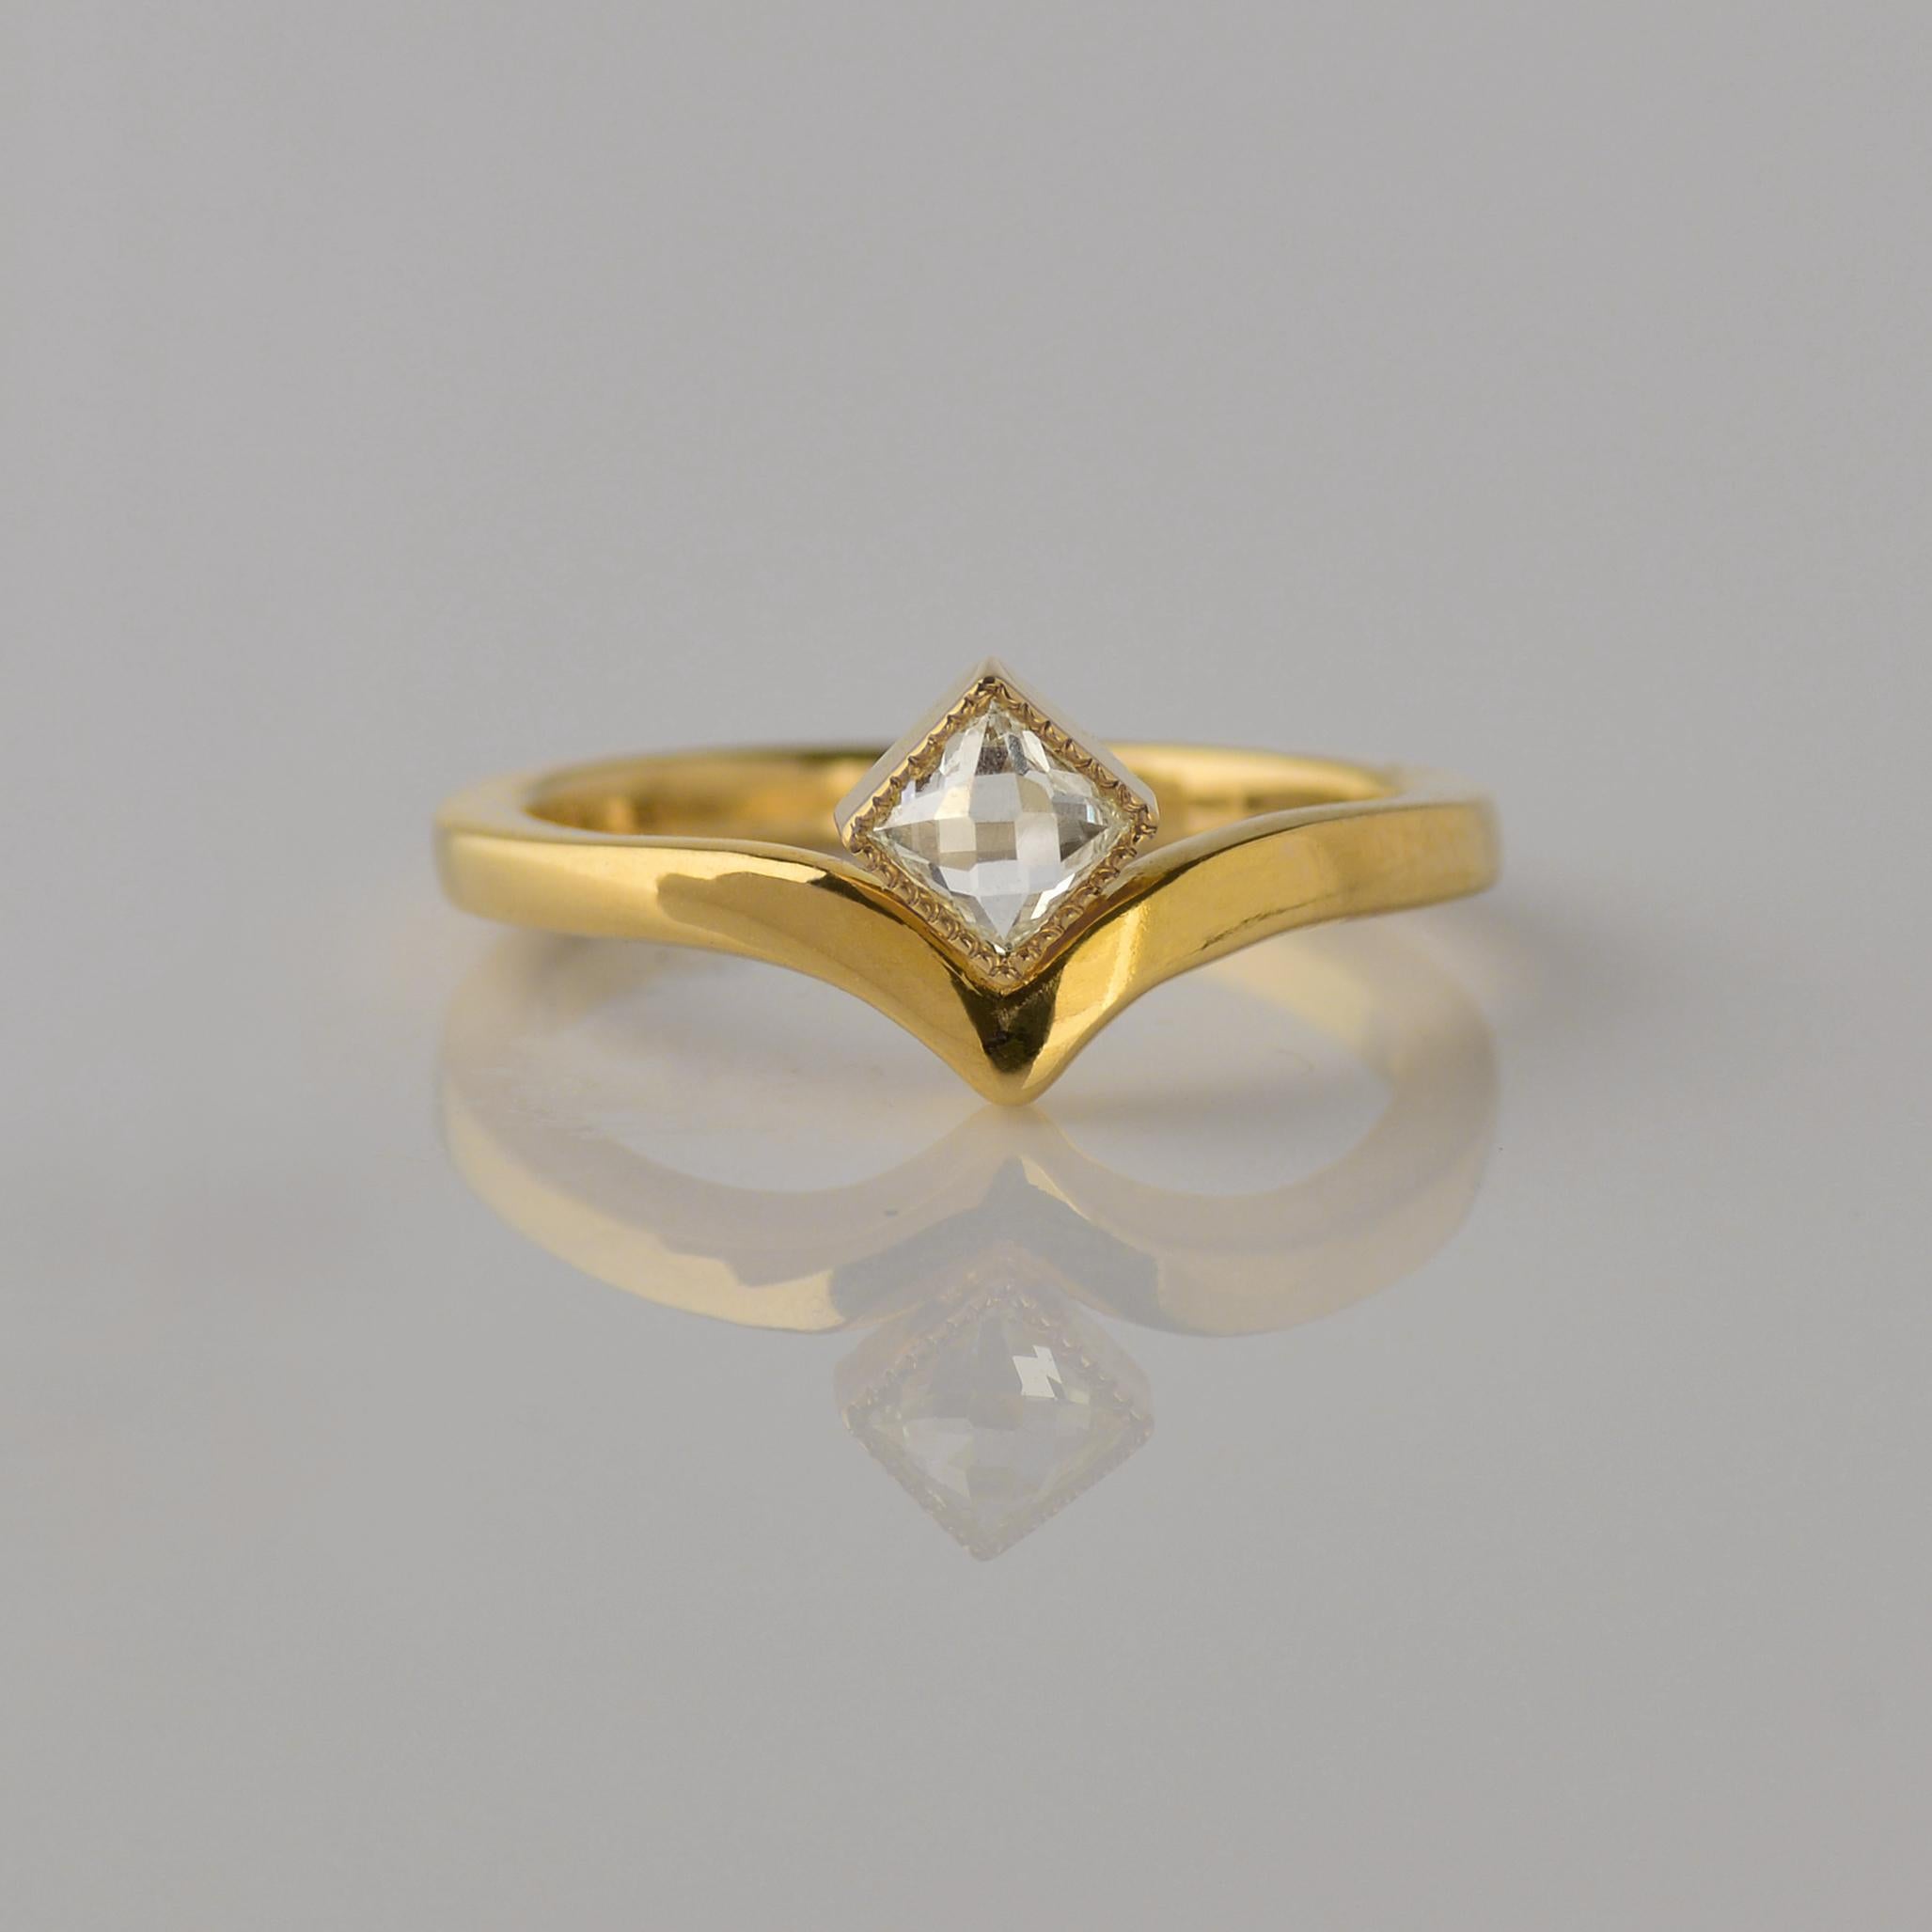 Unser Lilly Victory Rose Nouveau Cut Diamond Ring ist fließend und minimalistisch im Design. 

Inspiriert von Lilly Reich, einer Designerin der deutschen Bauhaus-Bewegung. Lilly begann als Stickereikünstlerin, die auf traditionell akzeptierte